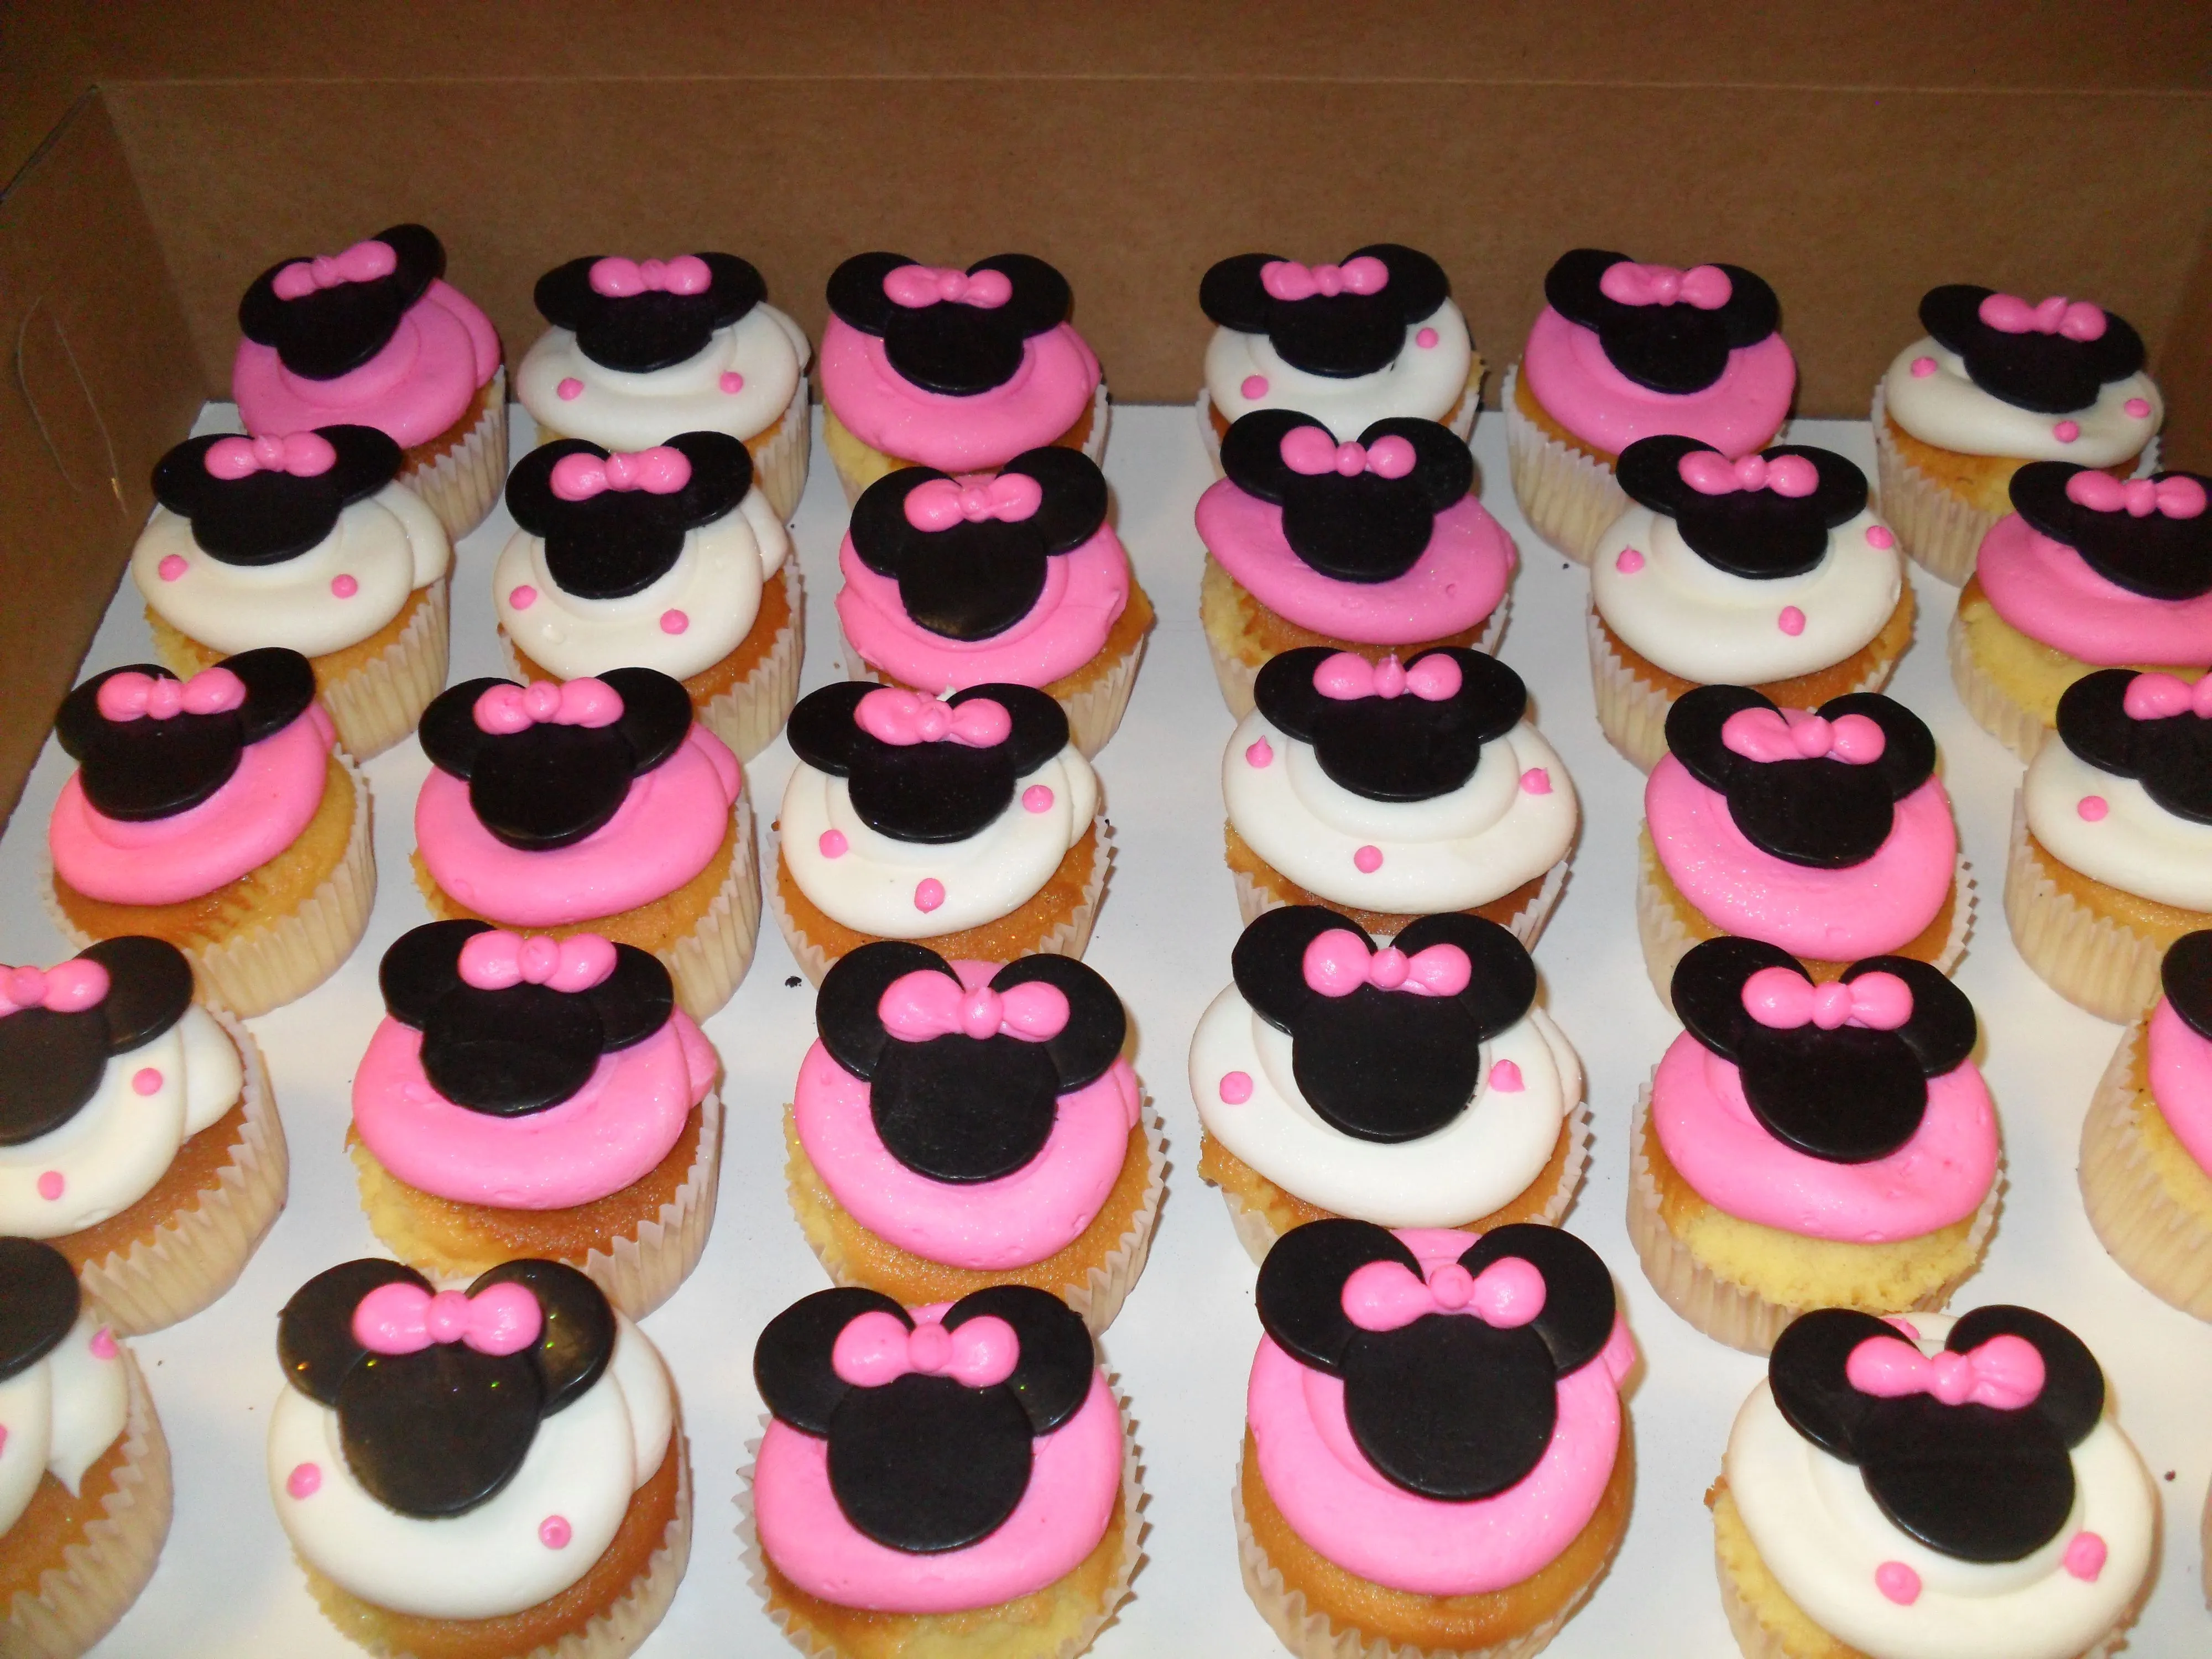 Imágenes de cupcakes de Minnie Mouse - Imagui